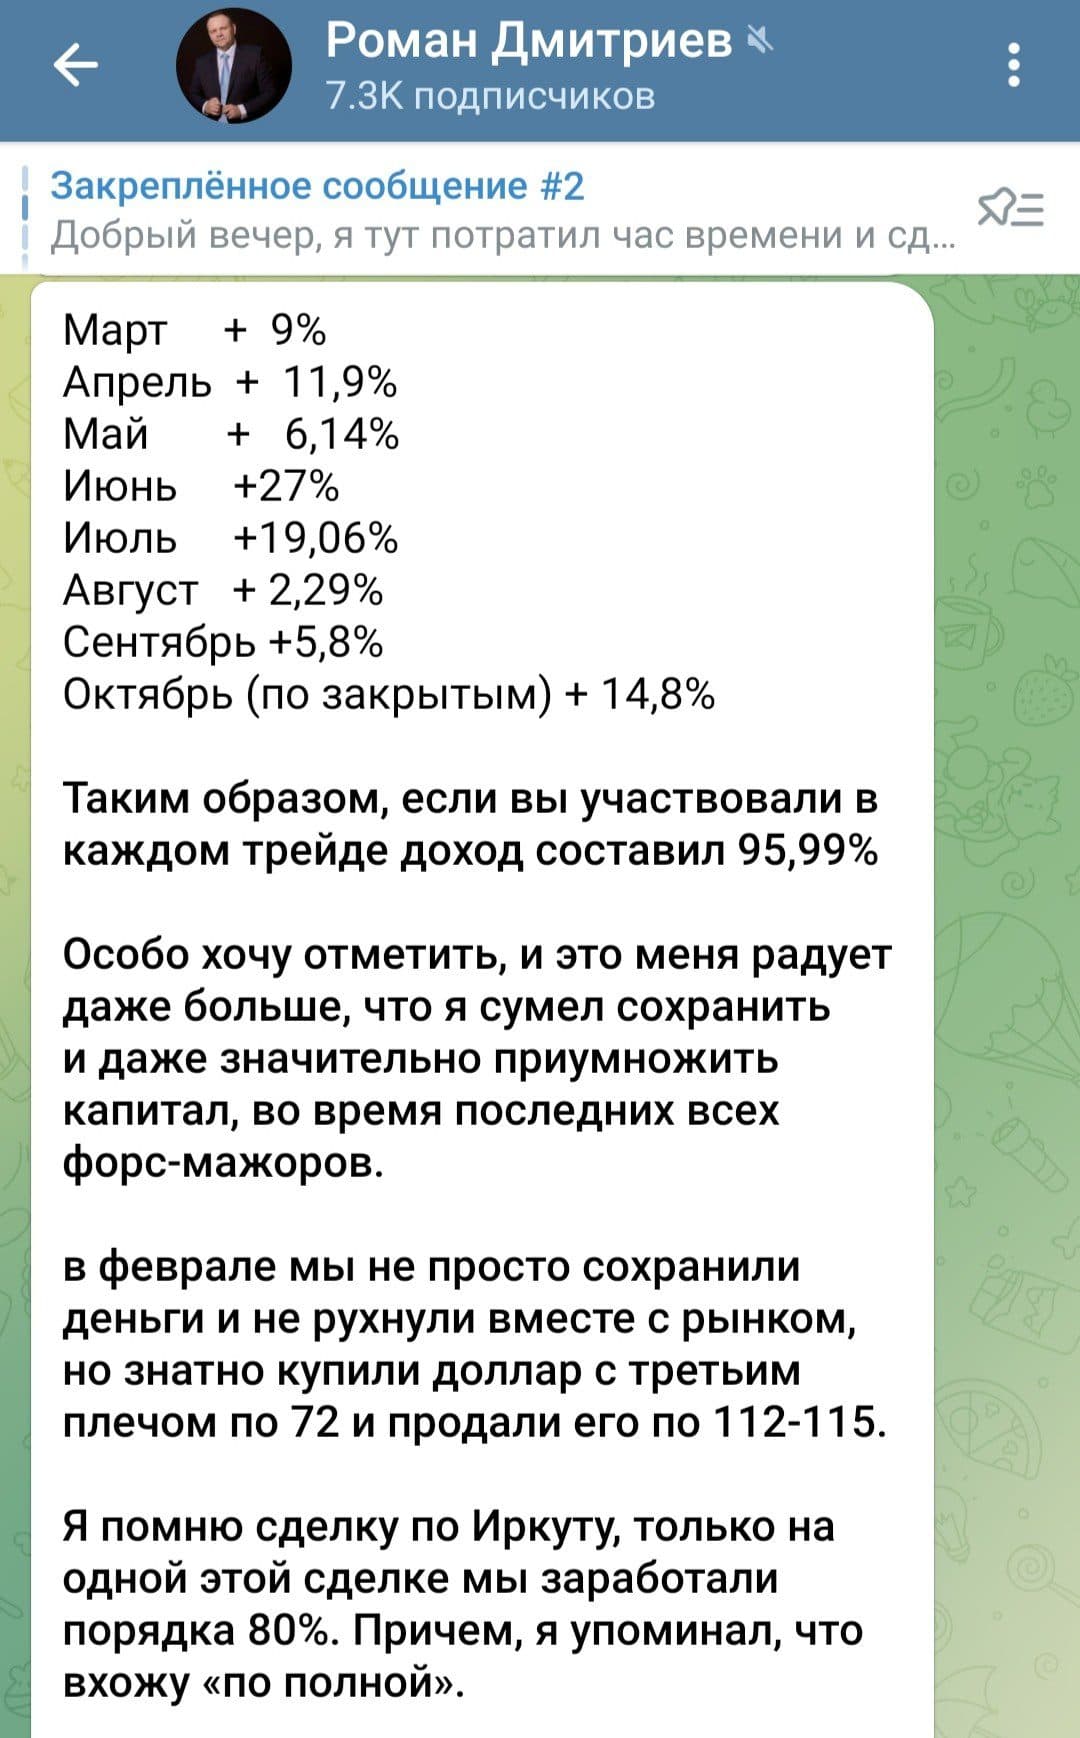 Роман Дмитриев Profitking телеграм